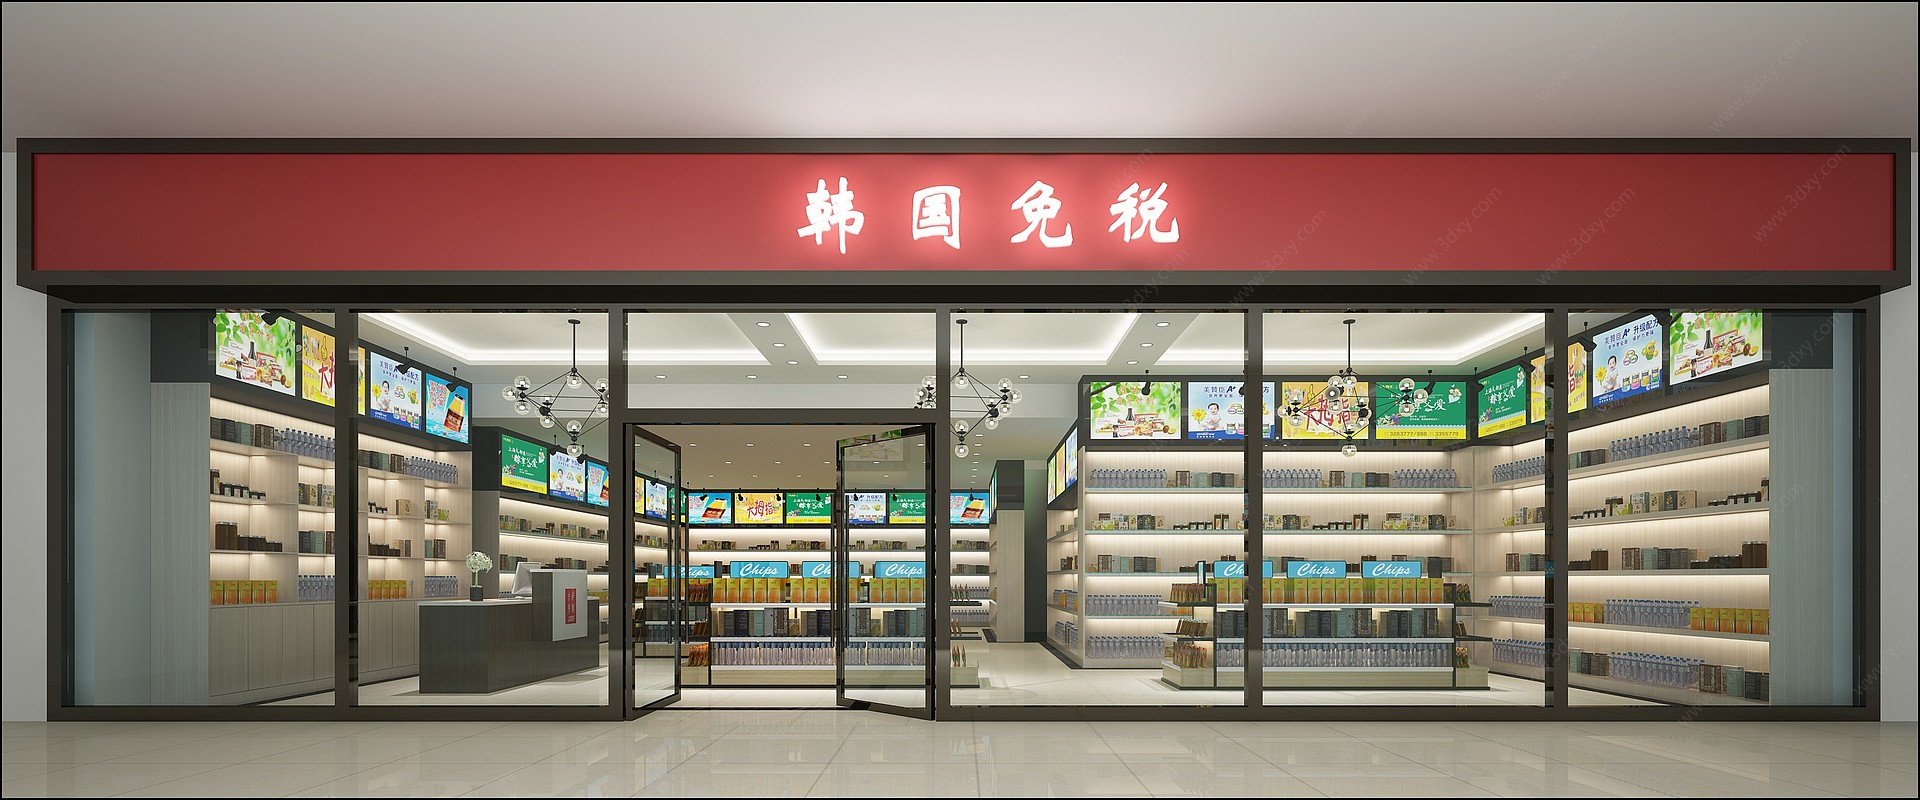 现代超市货架吧台3D模型